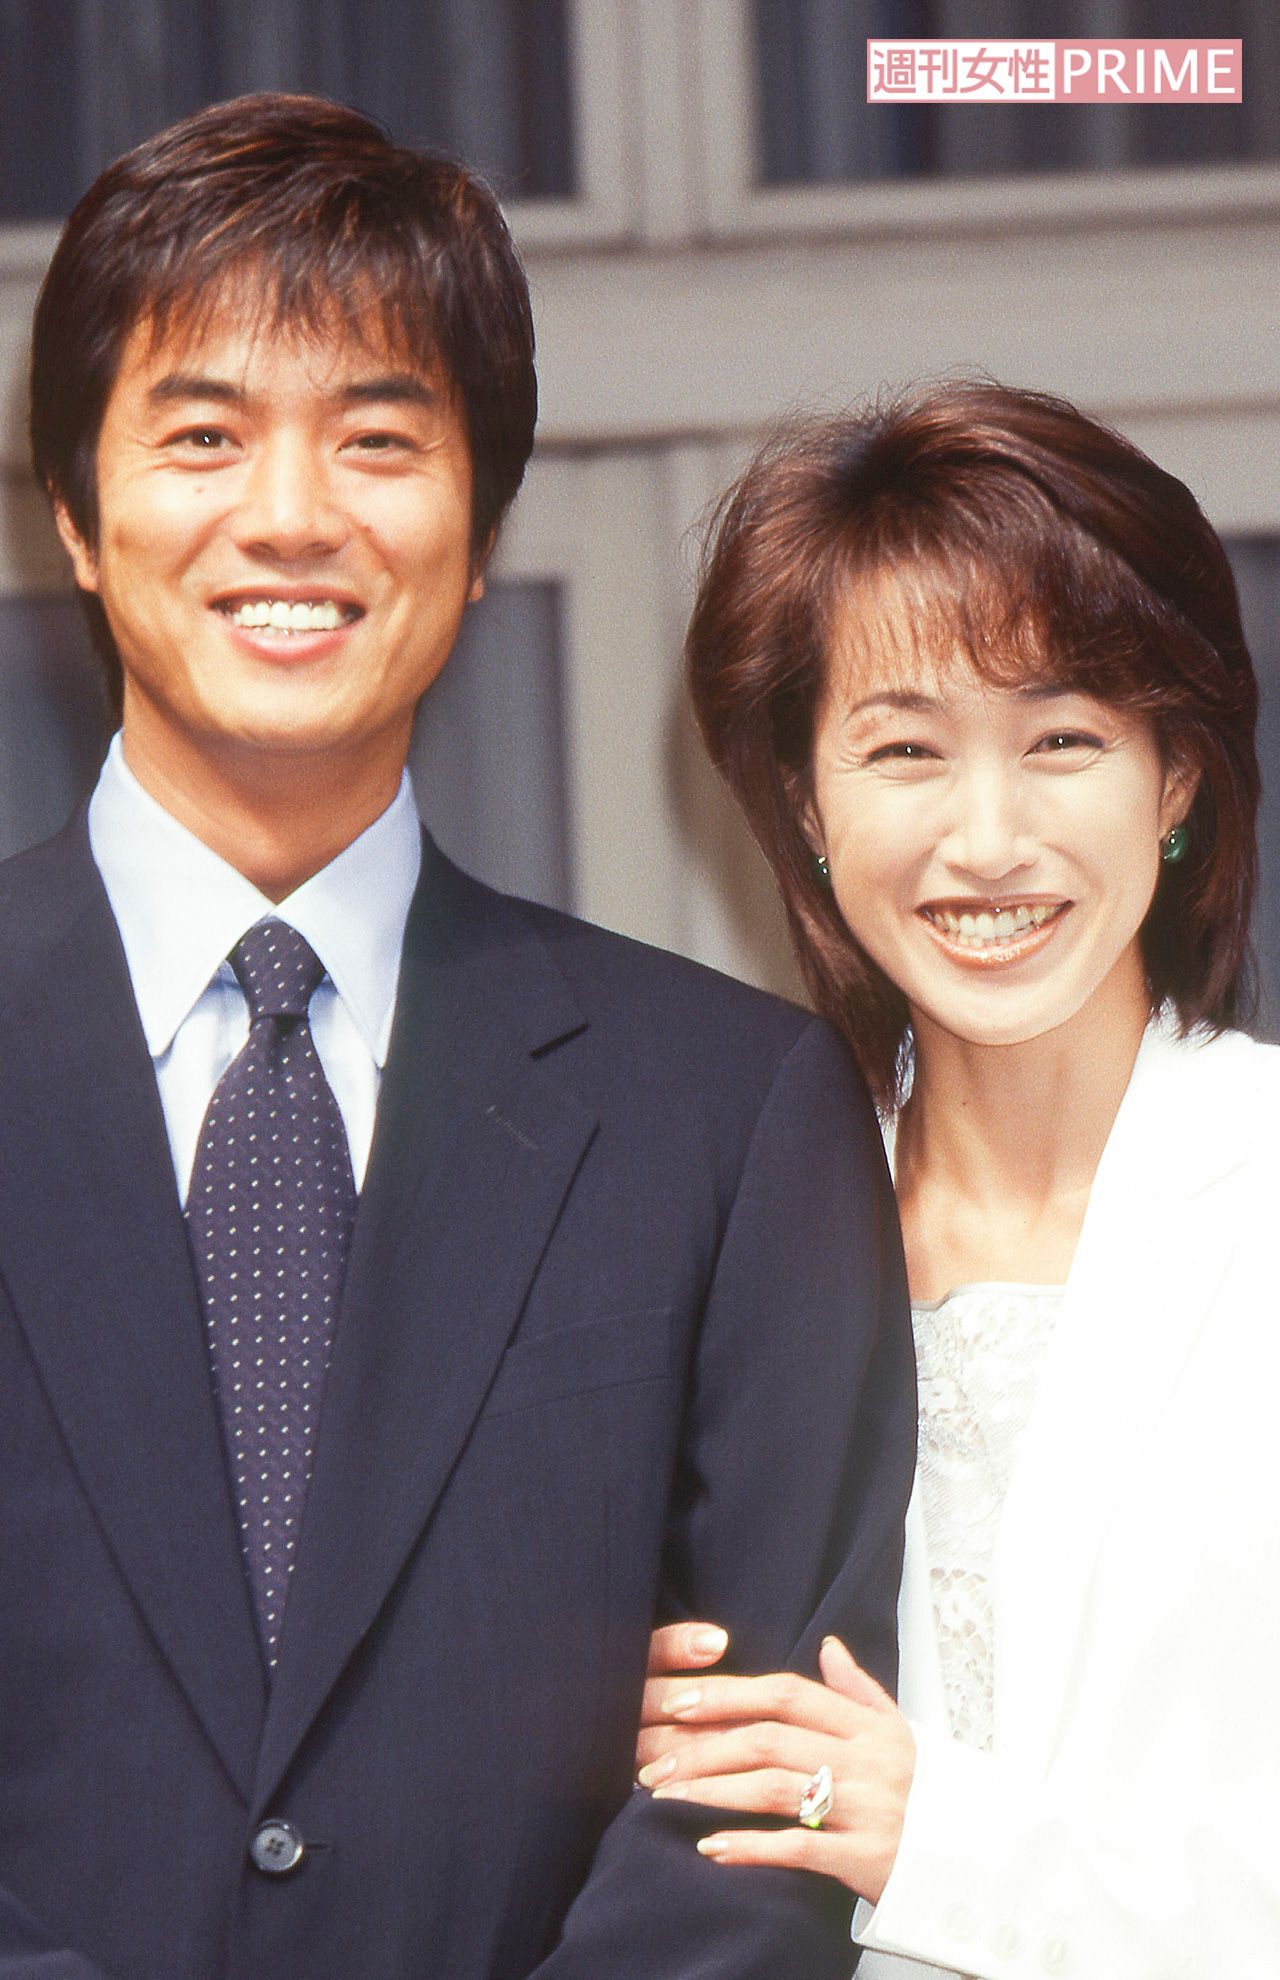 高島礼子の画像 写真 98年10月に婚約を発表 翌年 ハワイで挙式した高知と高島 2枚目 週刊女性prime